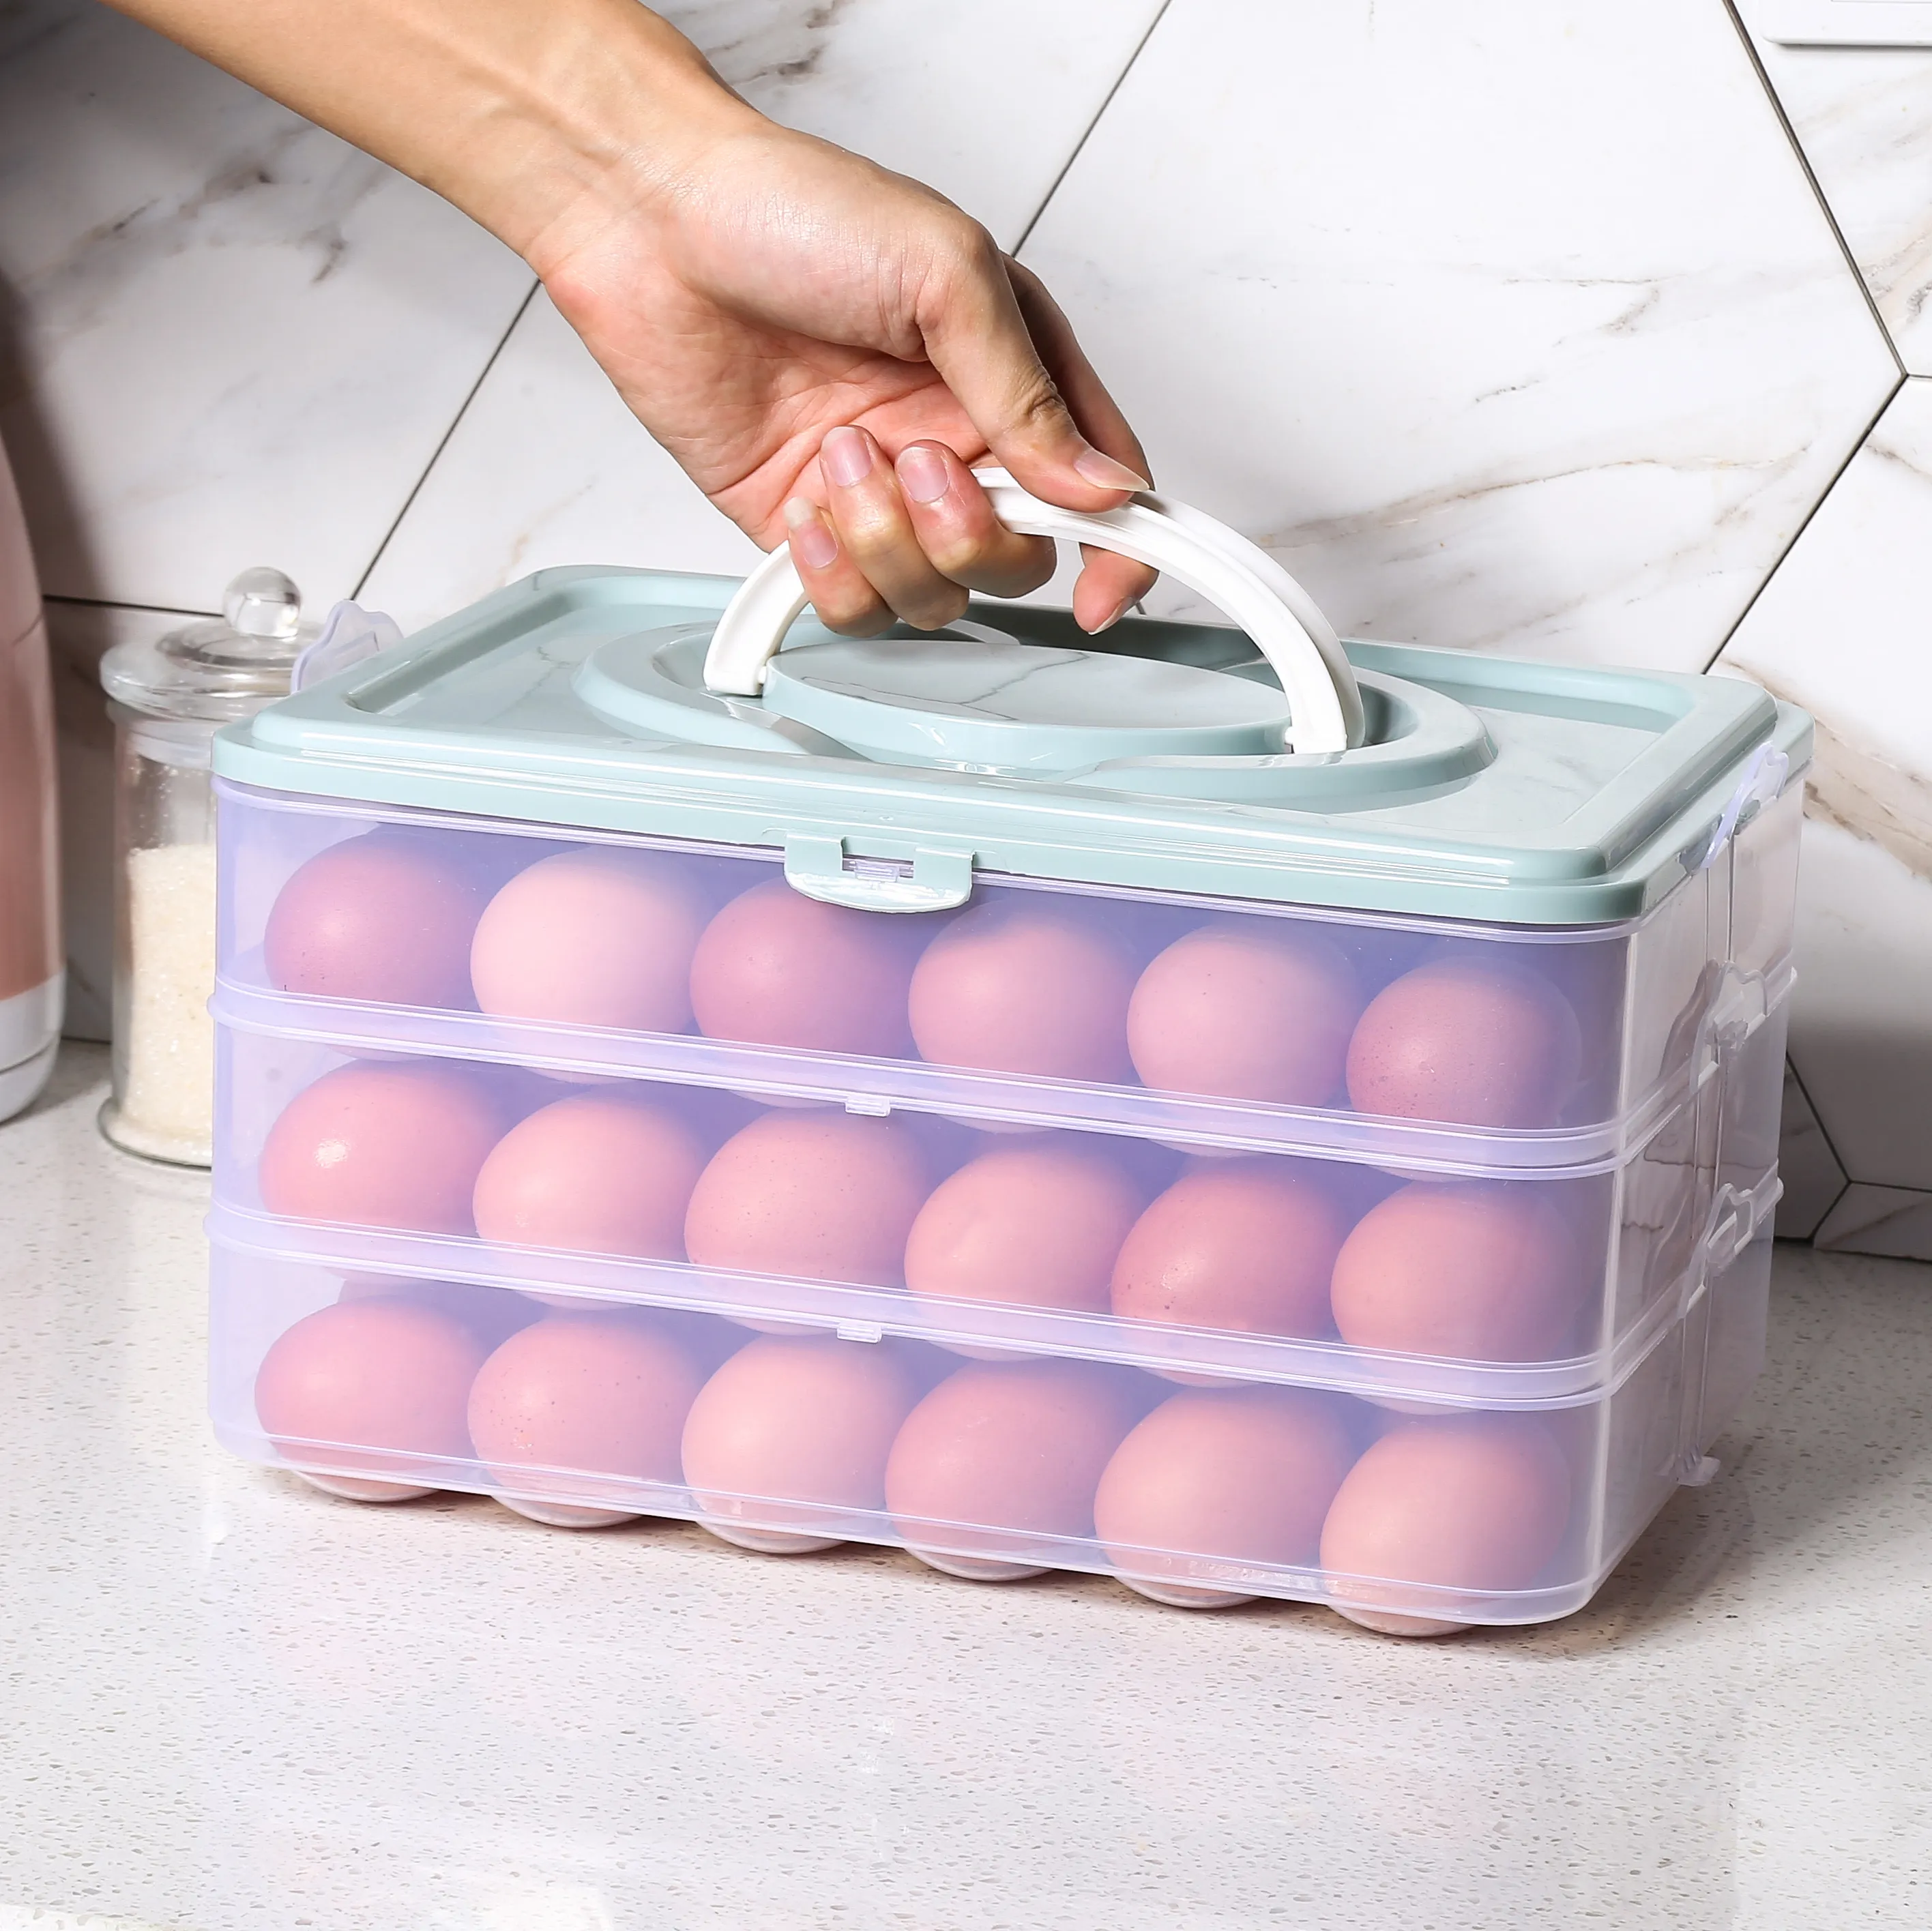 Caja de almacenamiento de 3 capas, contenedor de plástico transparente de gran capacidad para guardar huevos frescos en el frigorífico